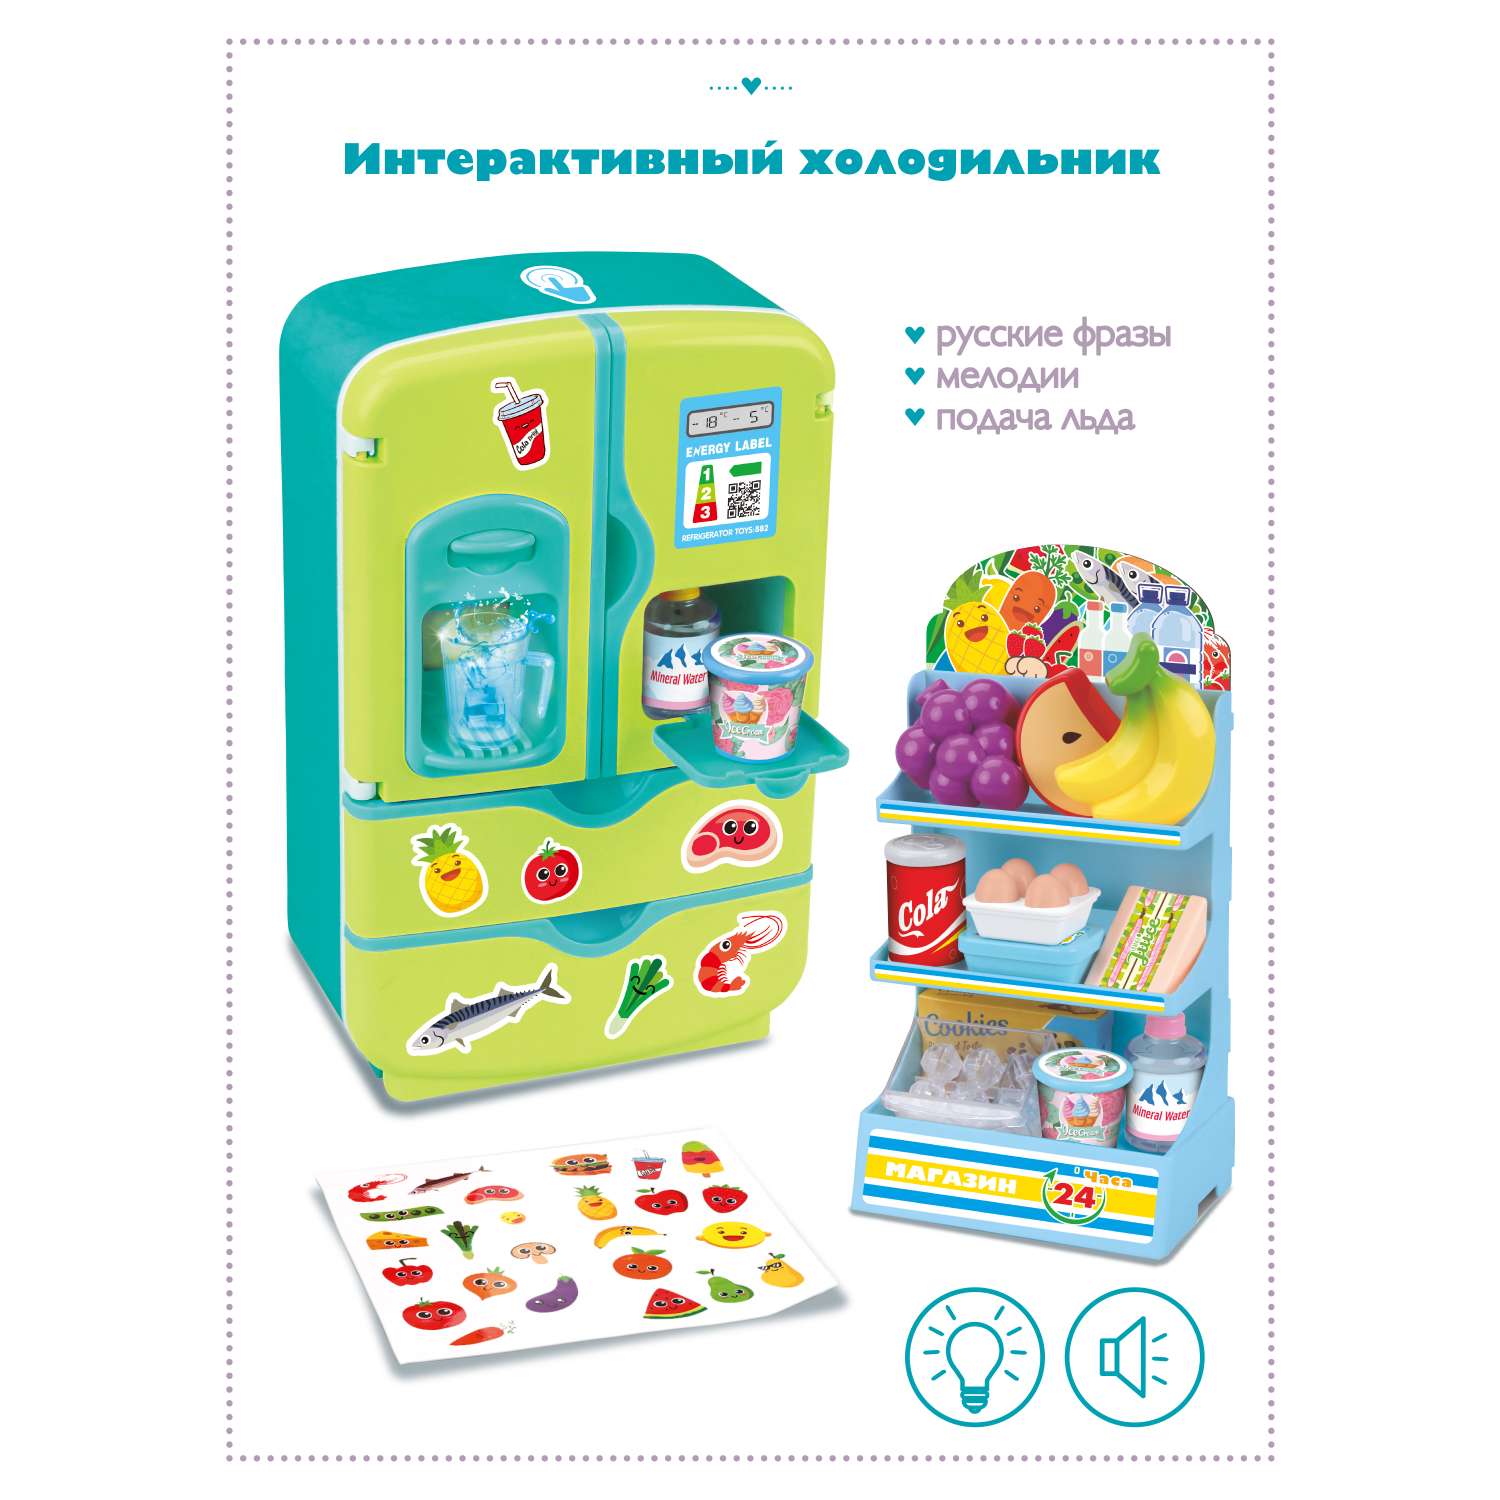 Игровой набор Mary Poppins Холодильник интерактивный. Голубой - фото 1